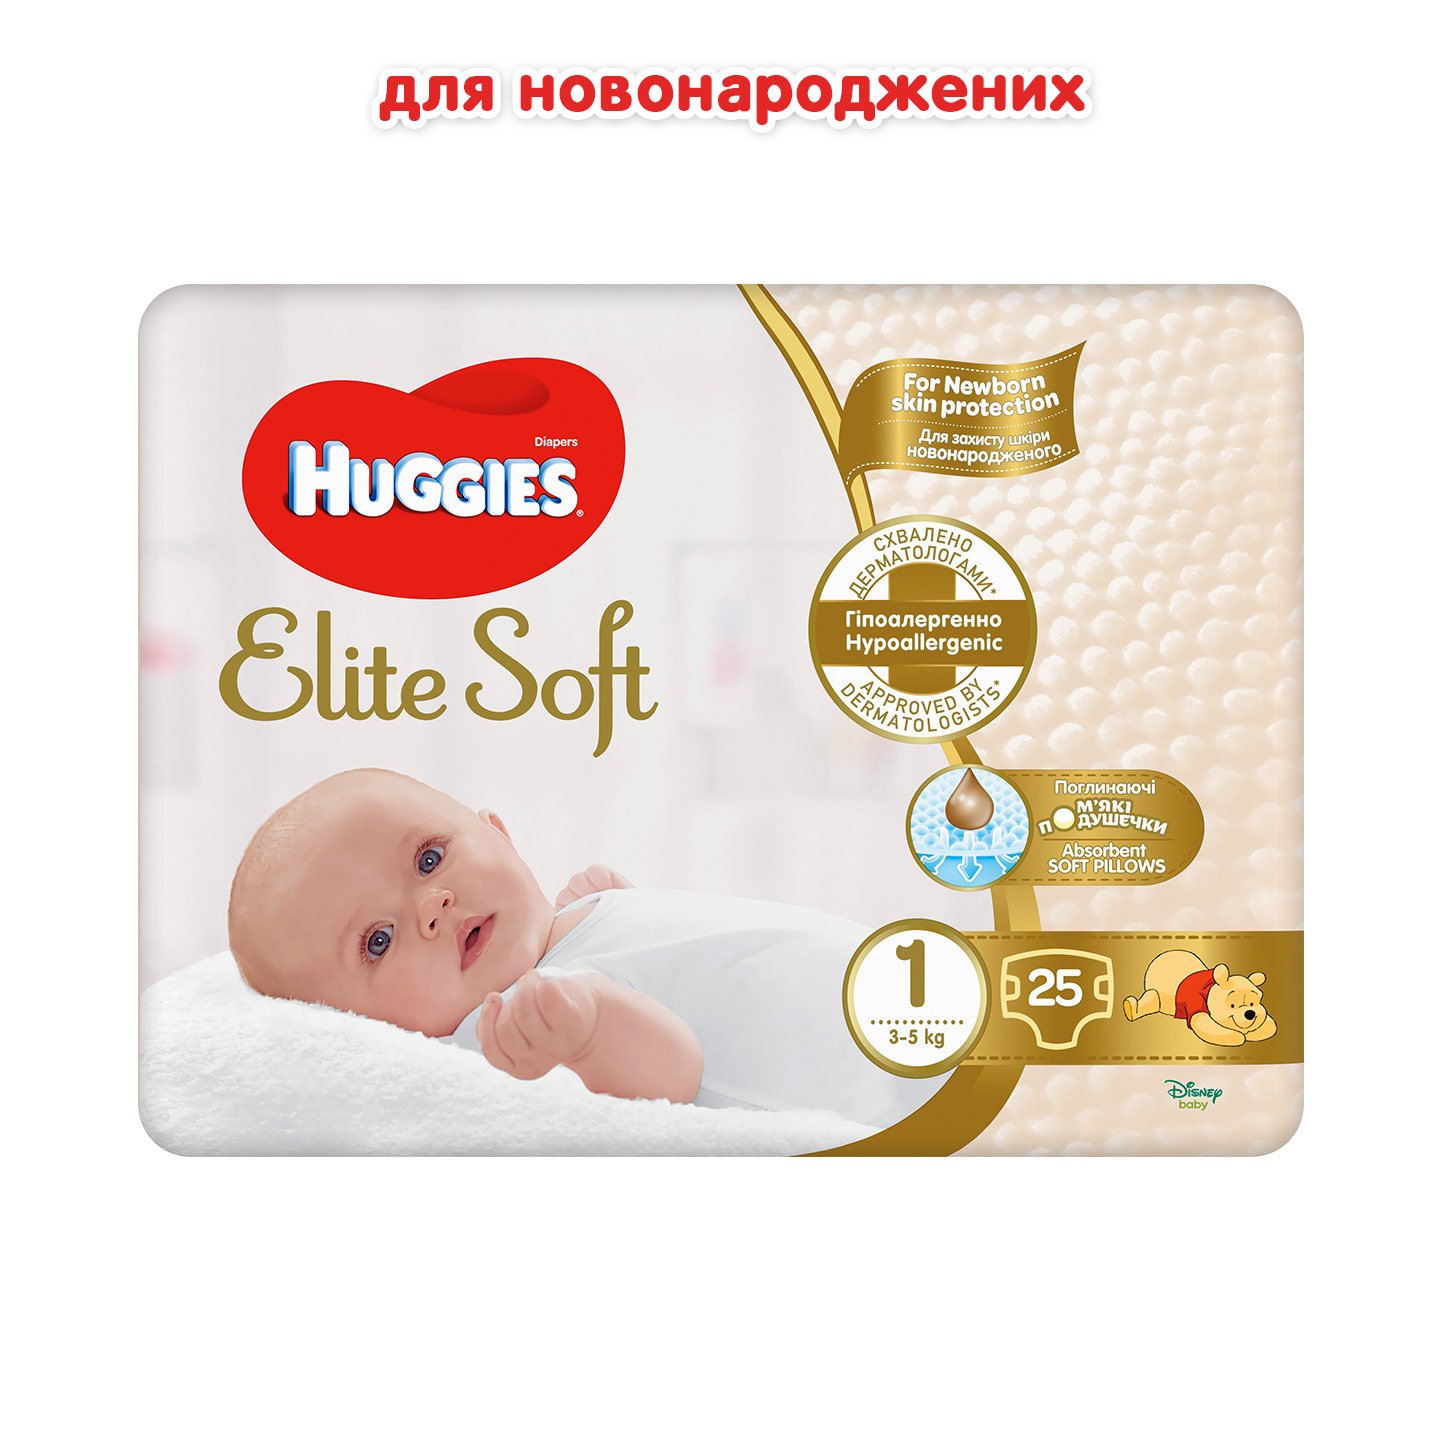 Подгузники Huggies Elite Soft 1 (3-5кг), 25 шт. - фото 2